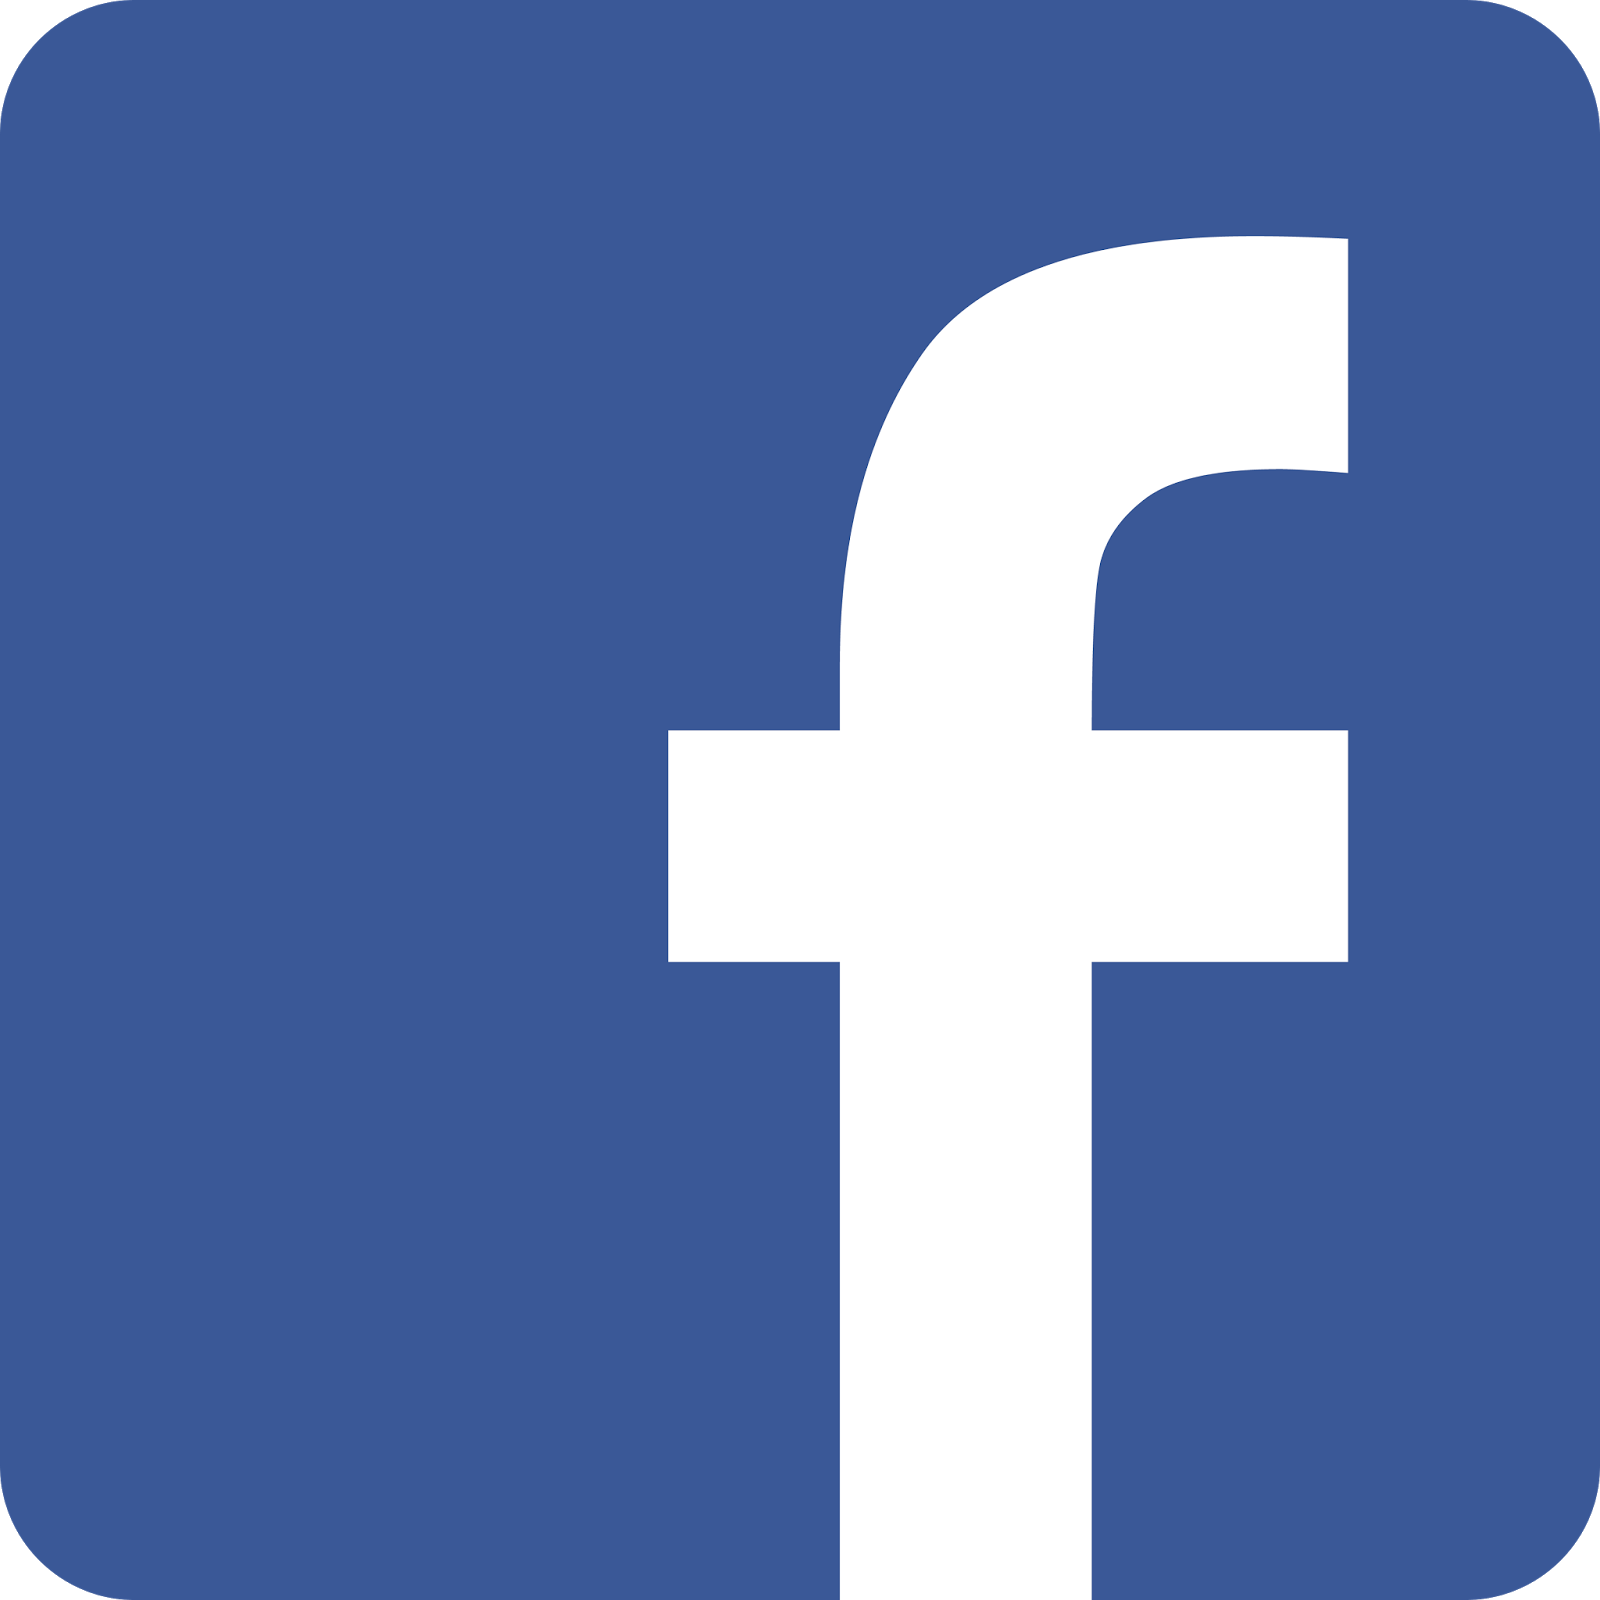 Afbeeldingsresultaat voor logo facebook transparent